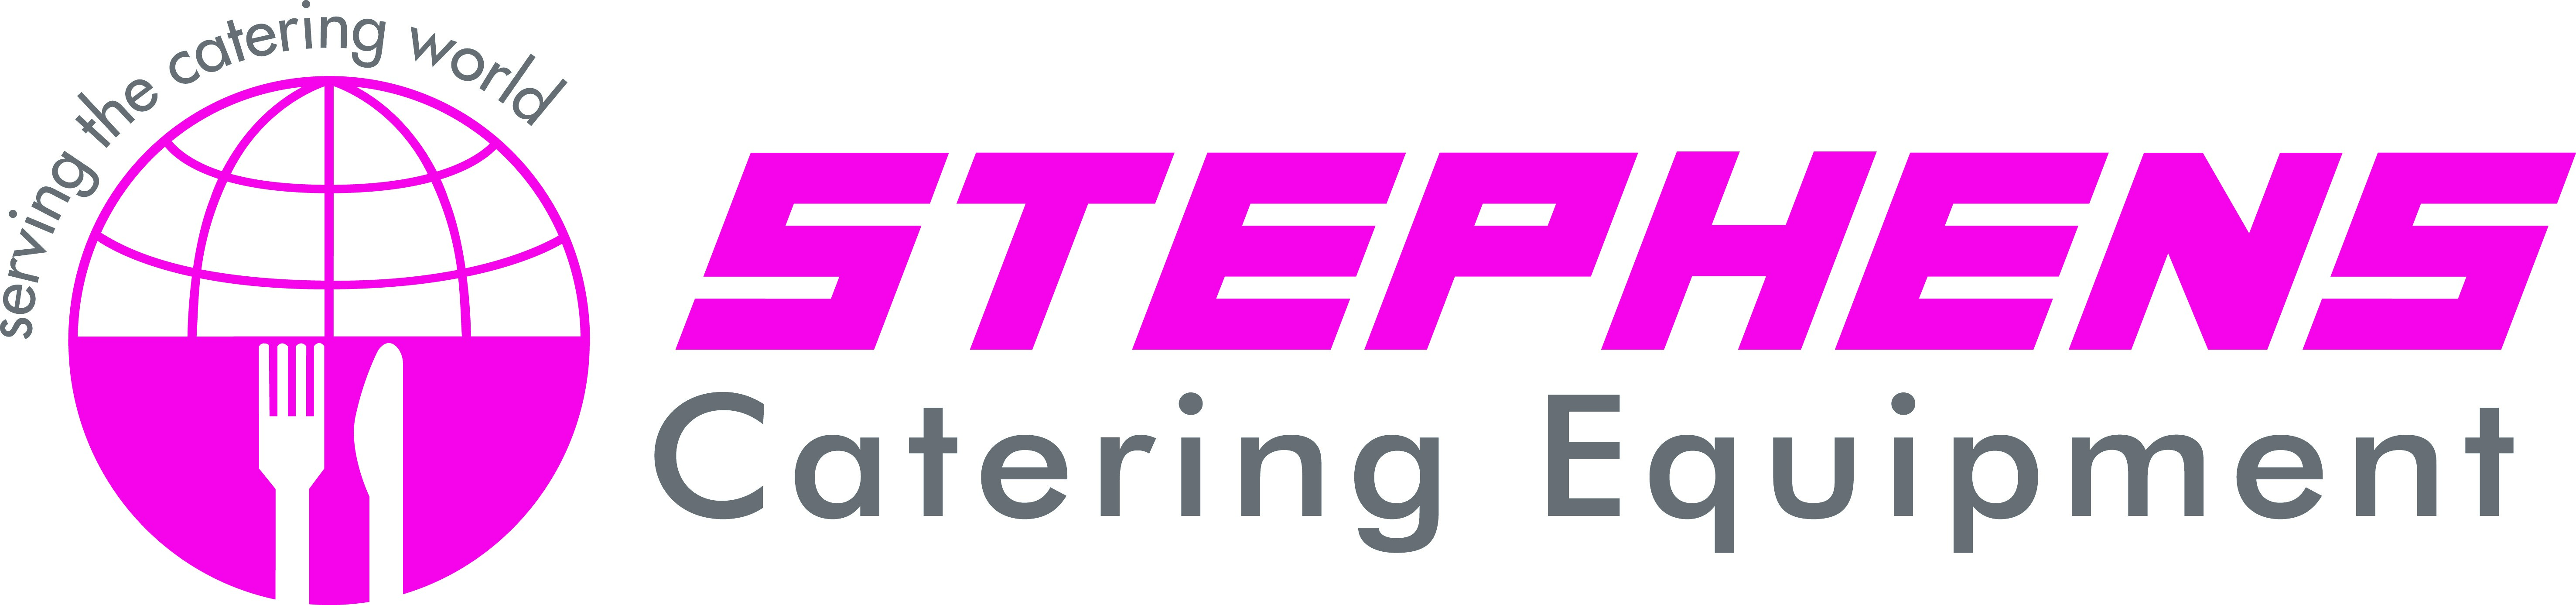 stephens-catering-cmyk-logo.jpg